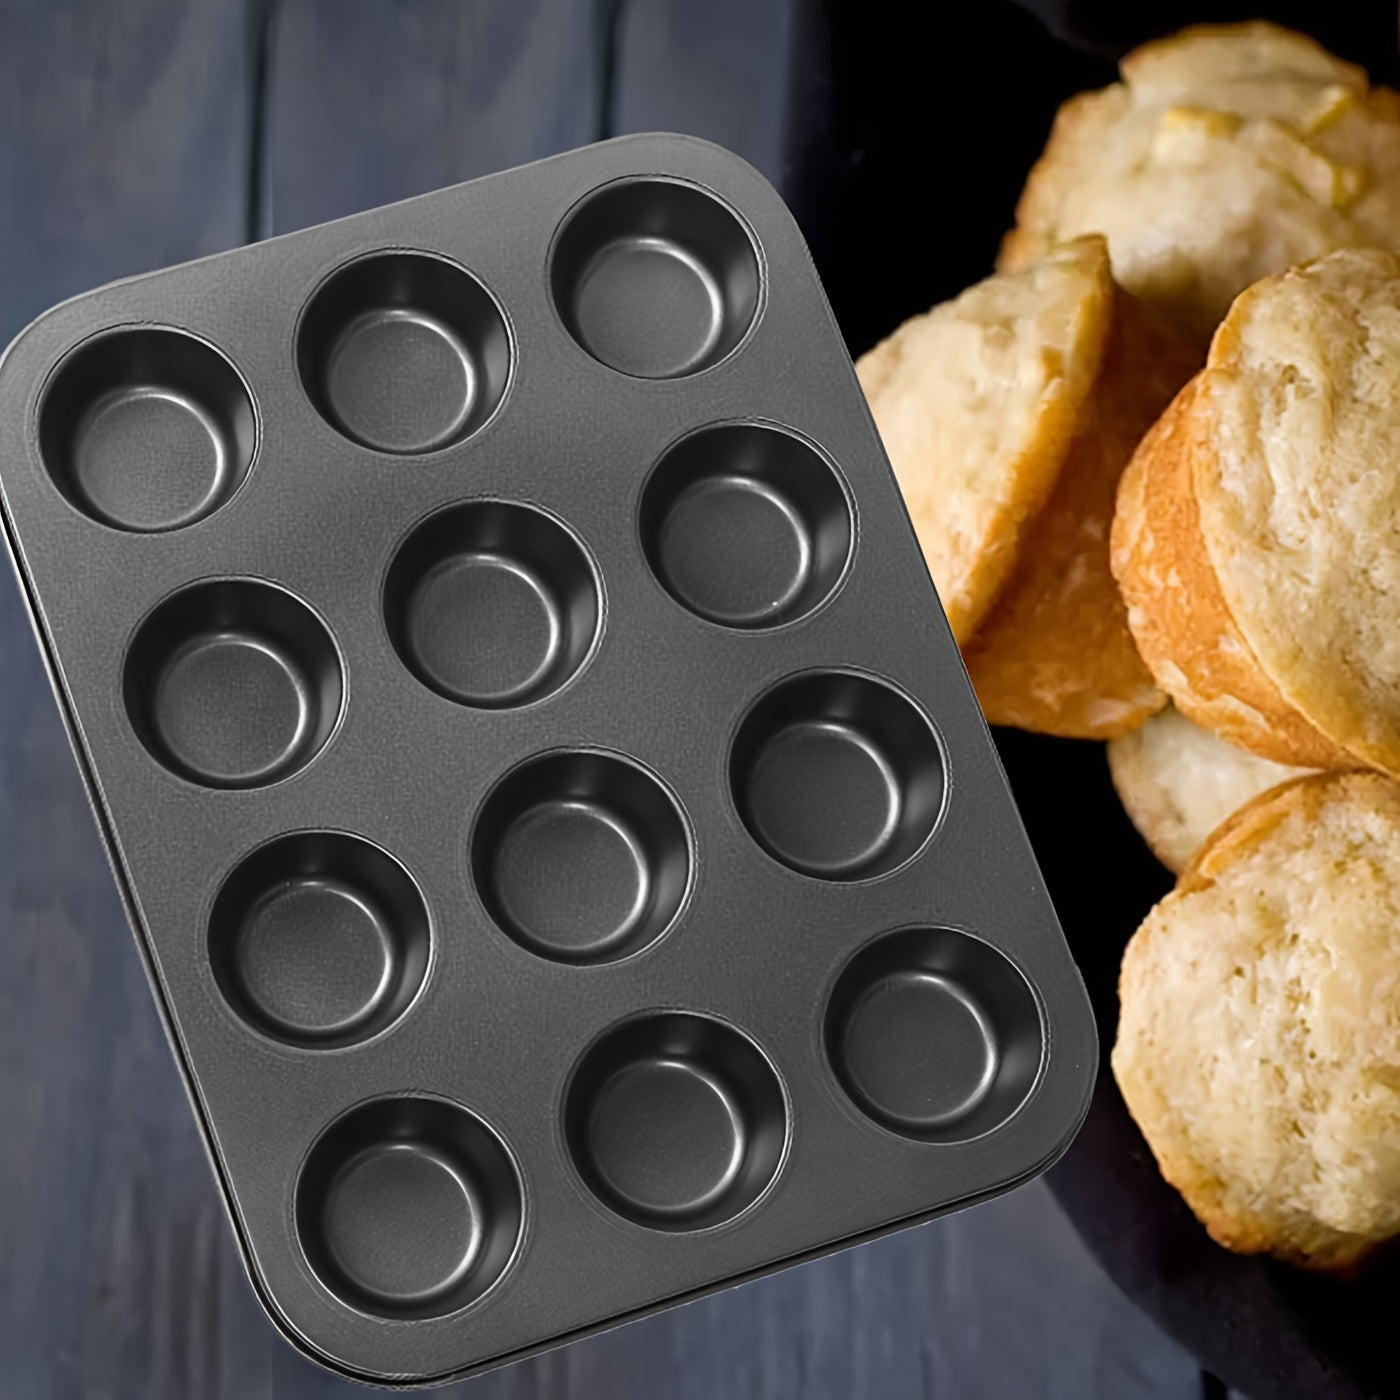 2 Piece Nonstick Muffin Baking Pan Set